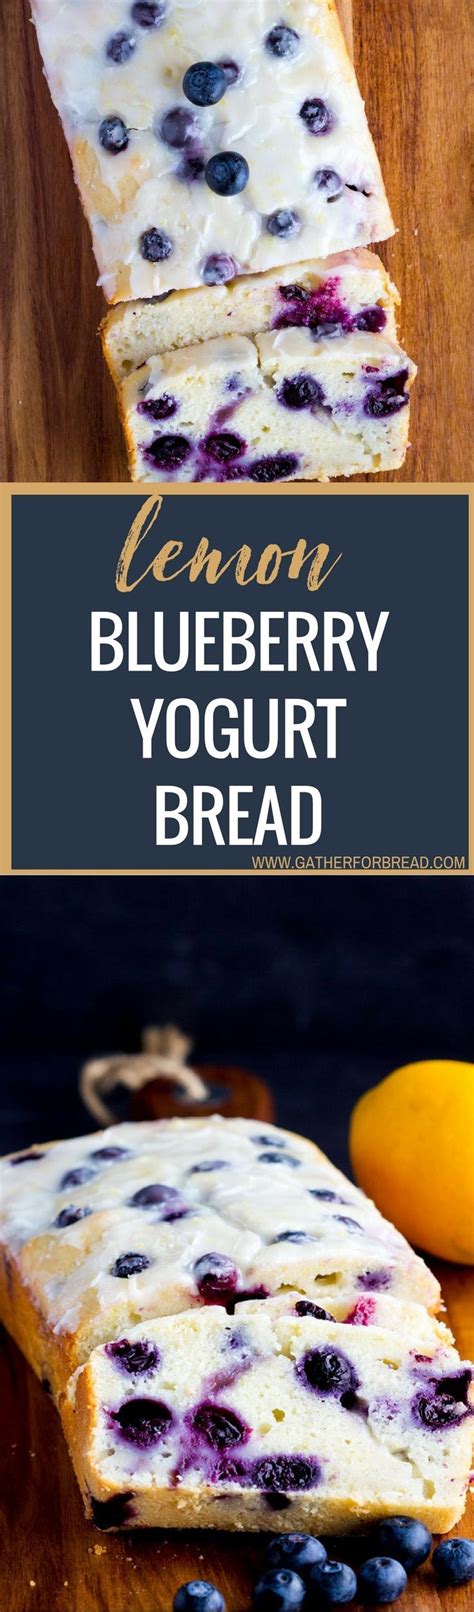 Lemon Blueberry Yogurt Bread - Homemade moist lemon bread with fresh blueberries, topped with a ...